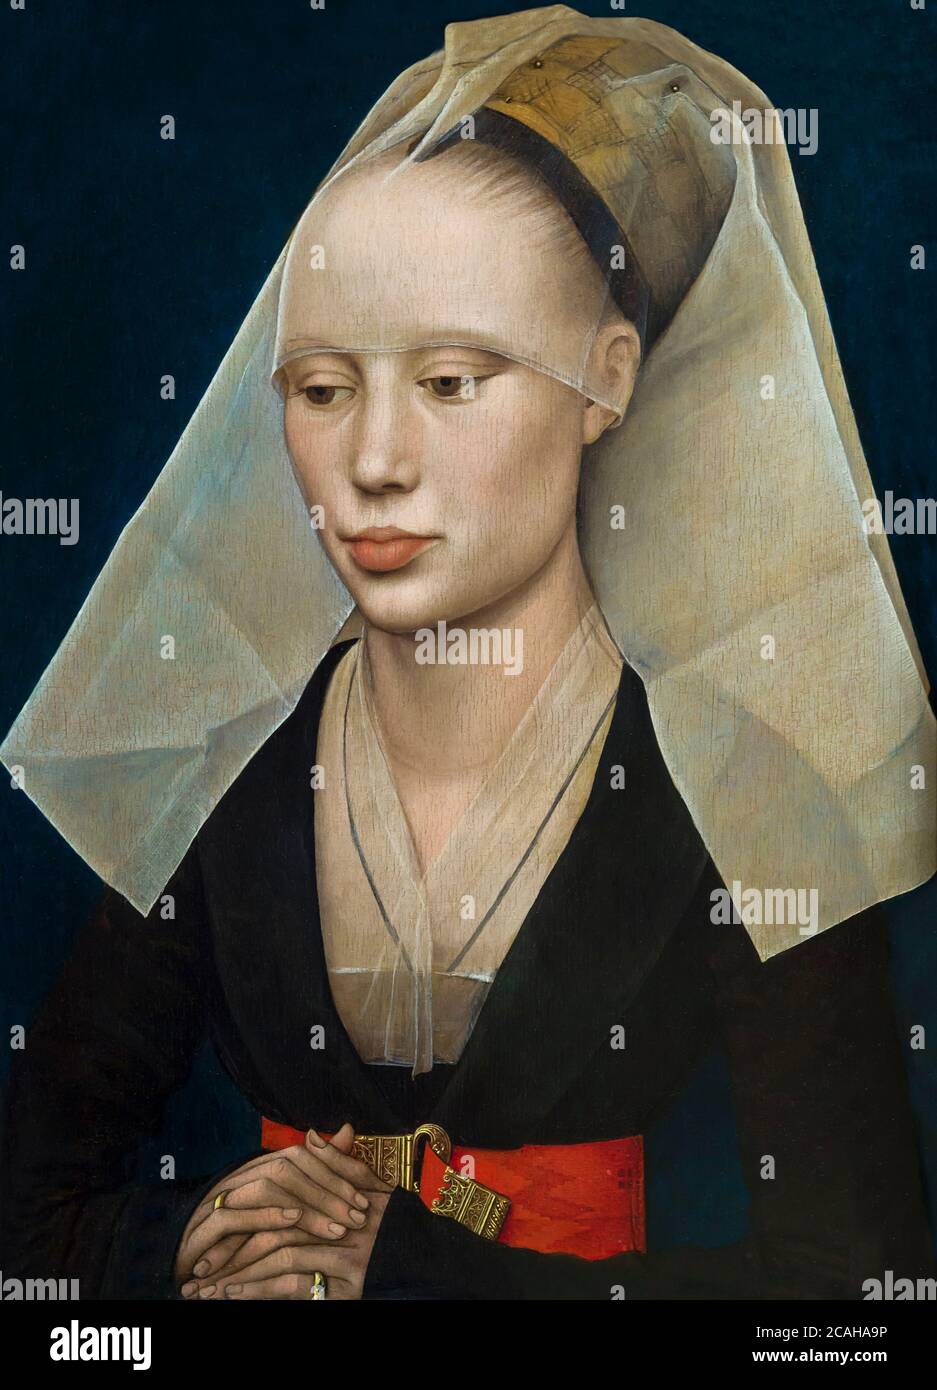 Portrait de femme, Rogier van der Weyden, vers 1460, National Gallery of Art, Washington DC, USA, Amérique du Nord Banque D'Images